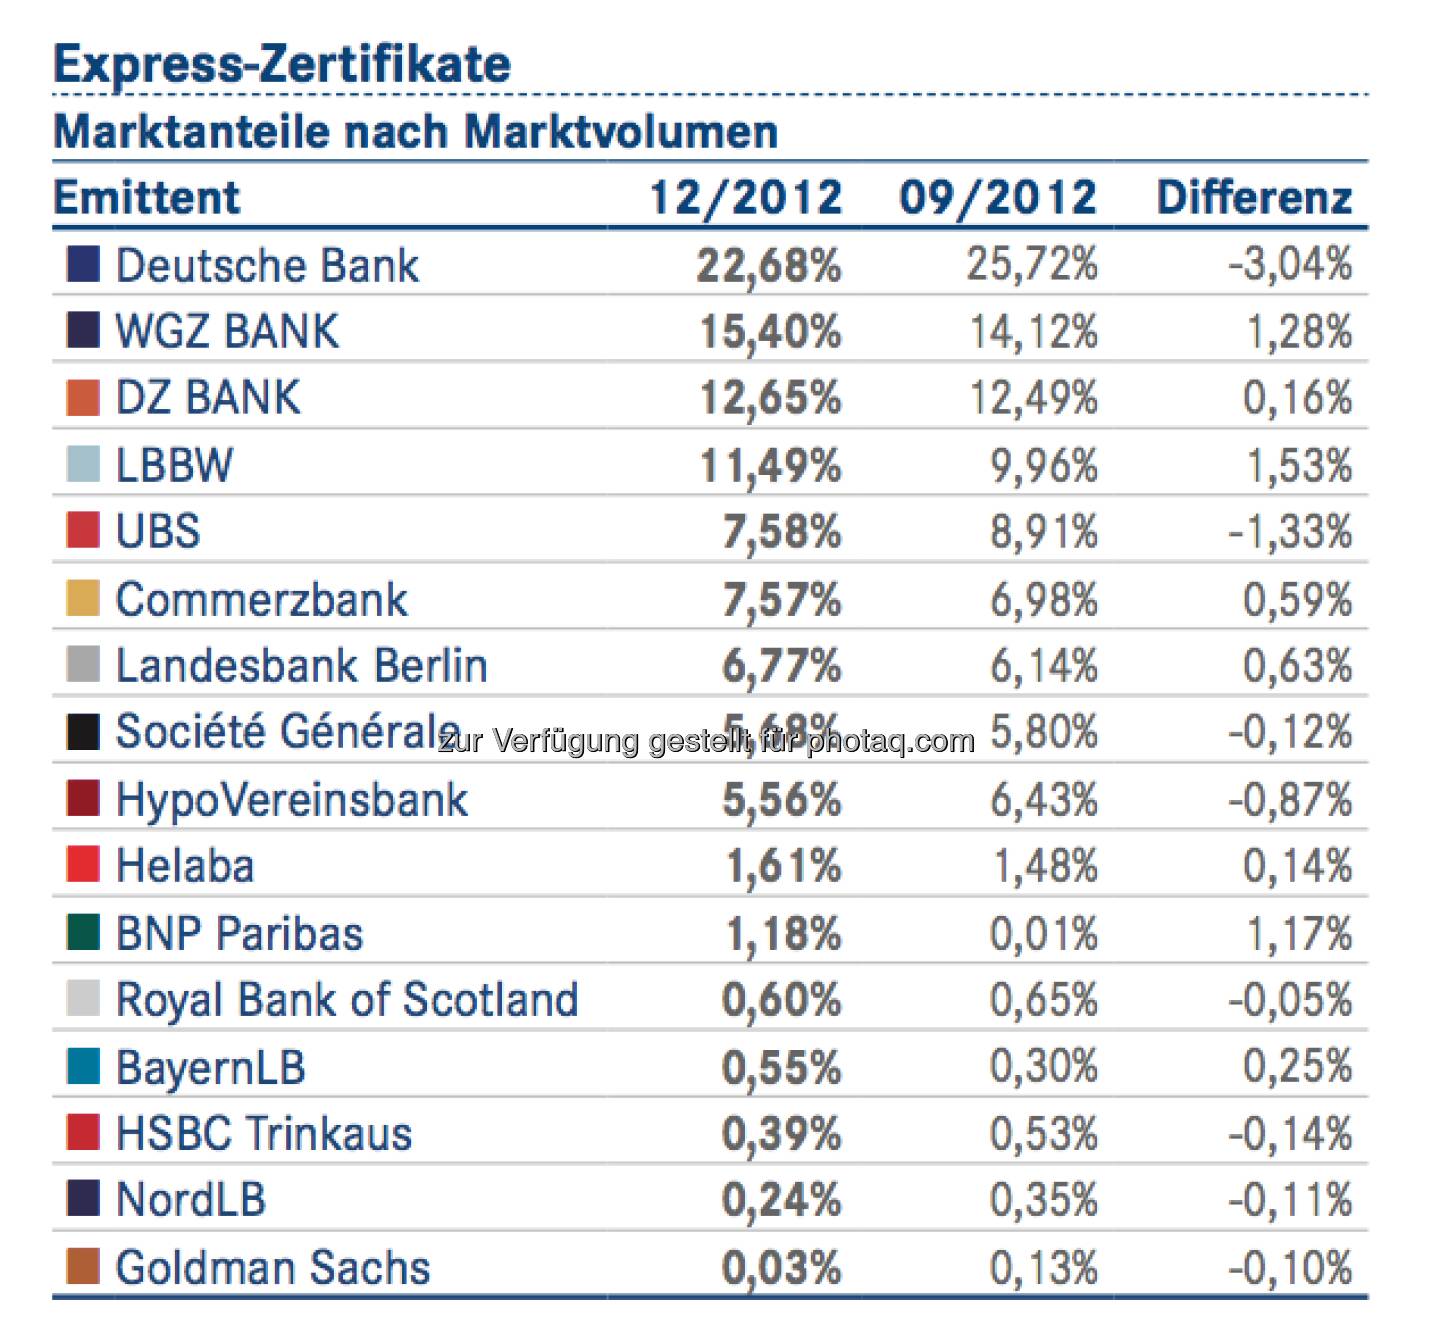 DDV-Statistik Ende 2012: Deutsche Bank bei Express-Zertifikaten vorne